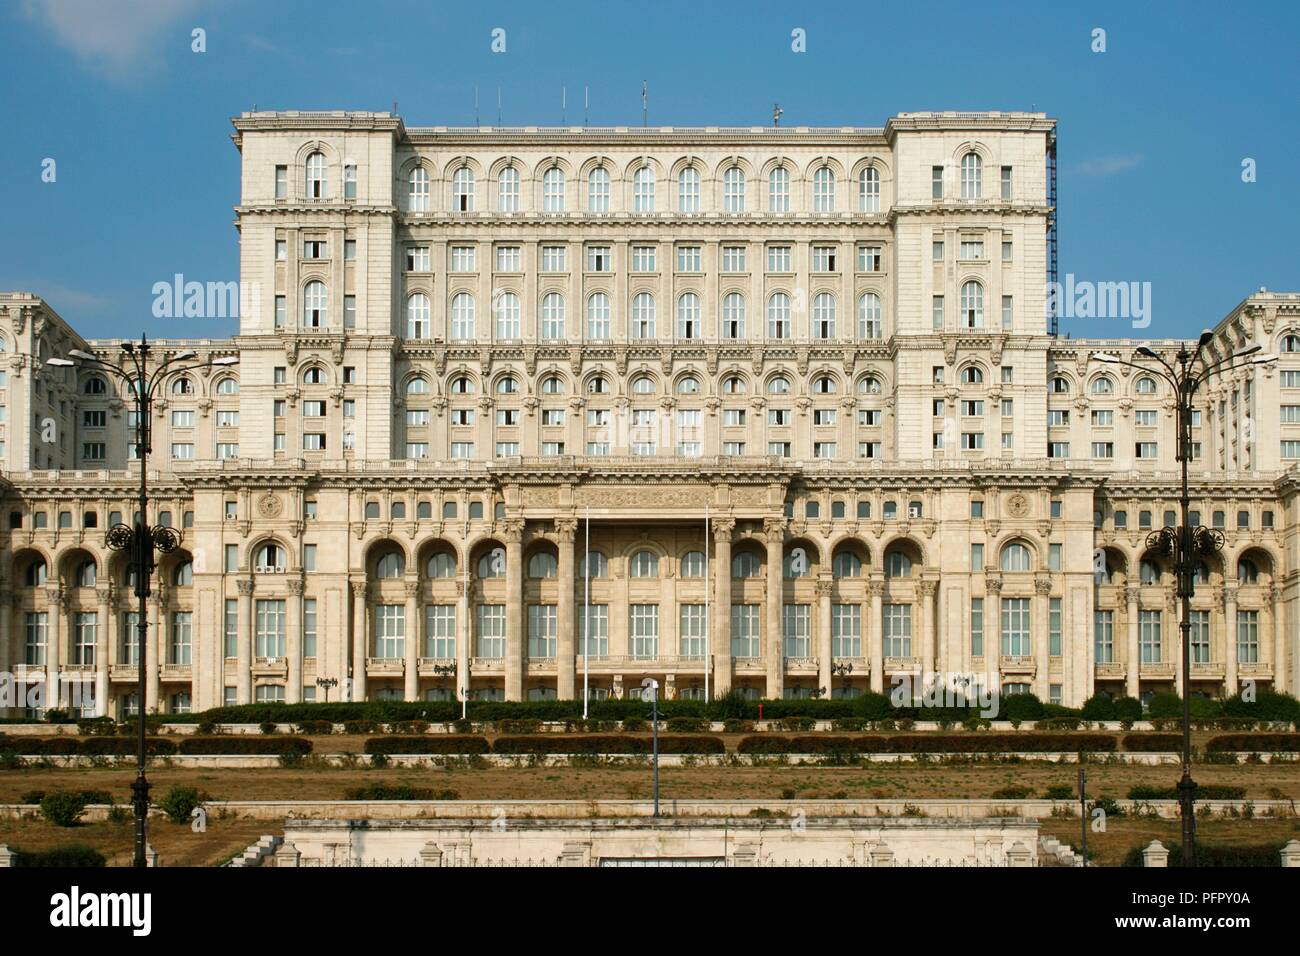 Romania, Bucharest, Palatul Parlamentului (Palace of the Parliament), facade Stock Photo